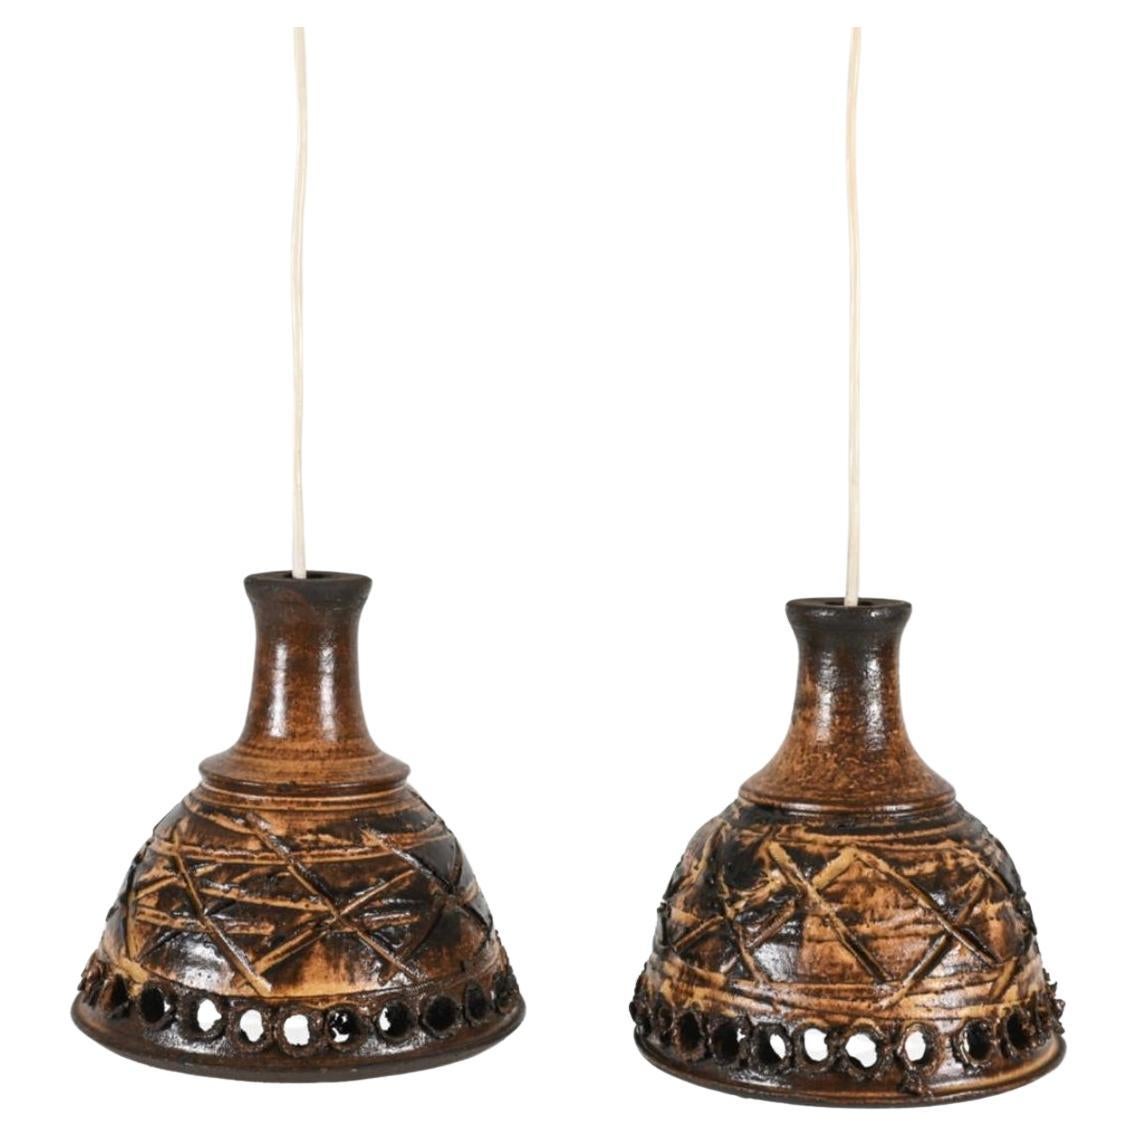 Paire de lampes suspendues scandinaves danoises modernes en céramique émaillée